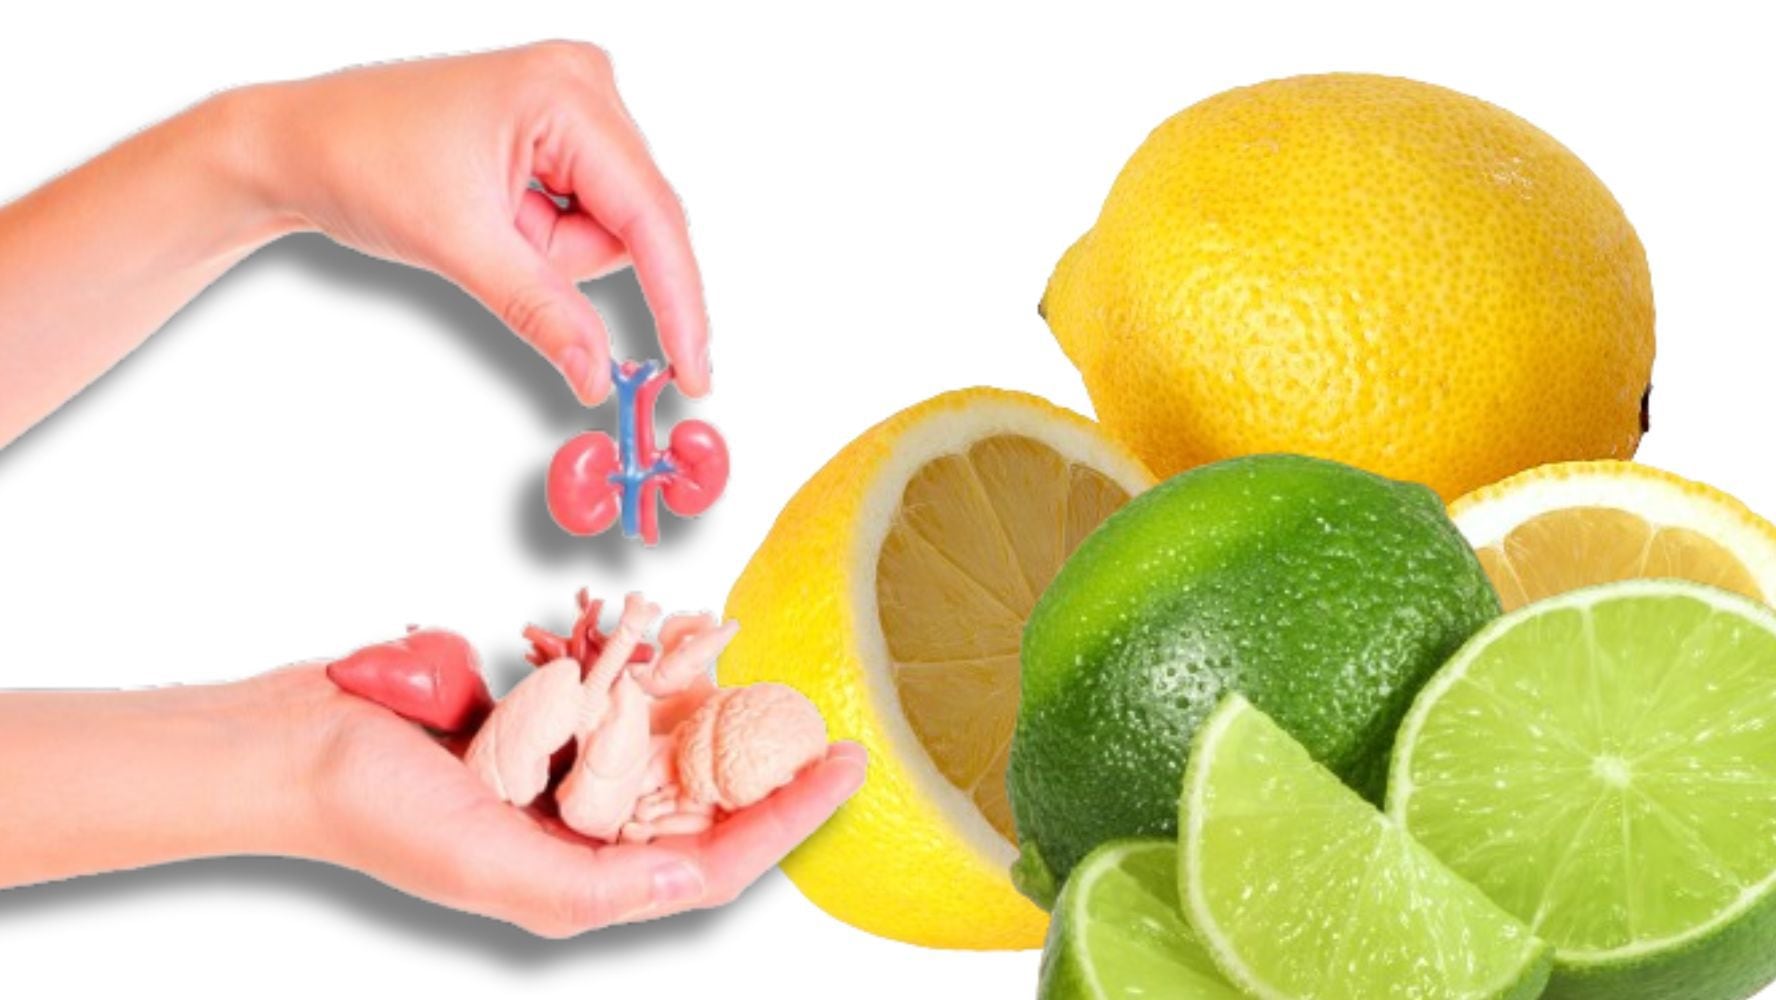 Dependiendo de las cantidades, el limón puede perjudicar o beneficiar algunos órganos. (Foto: Shutterstock)